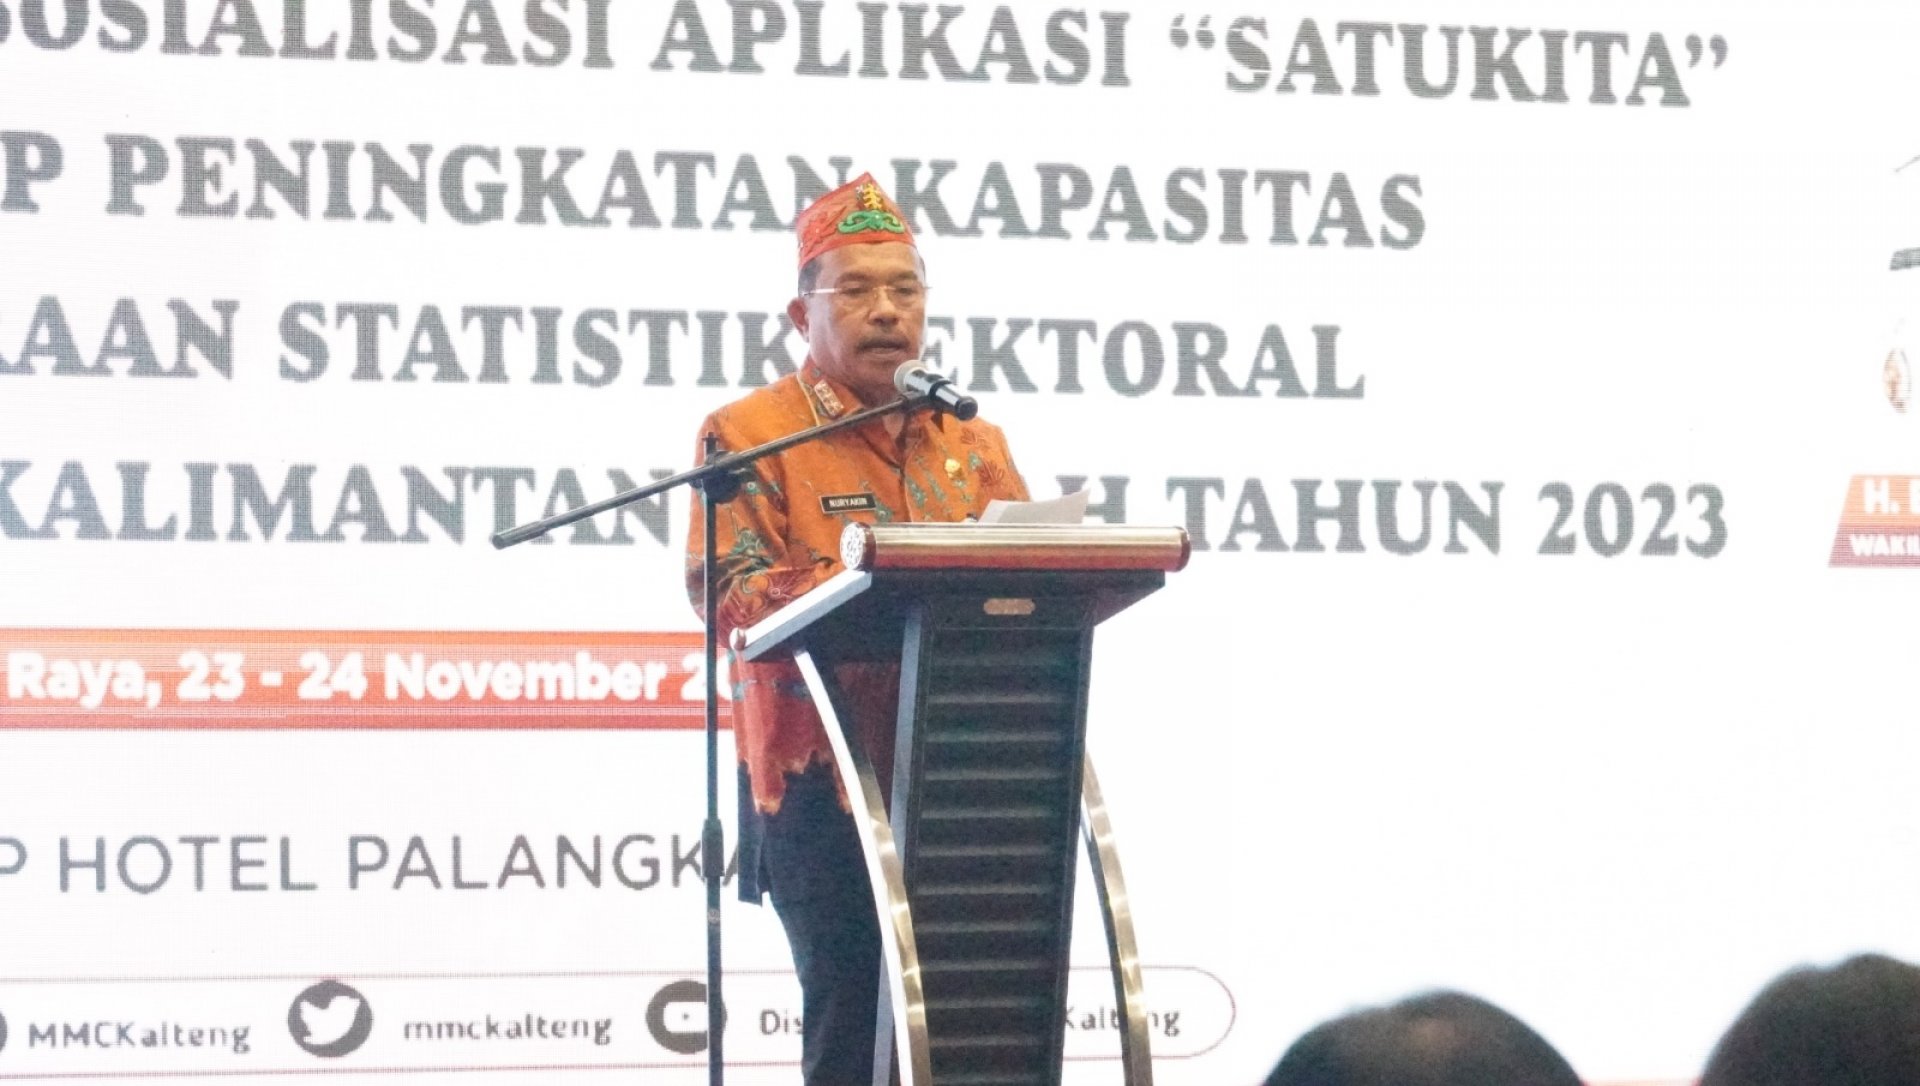 Sekda Nuryakin Buka Forum Satu Data Indonesia Tingkat Daerah Kalteng